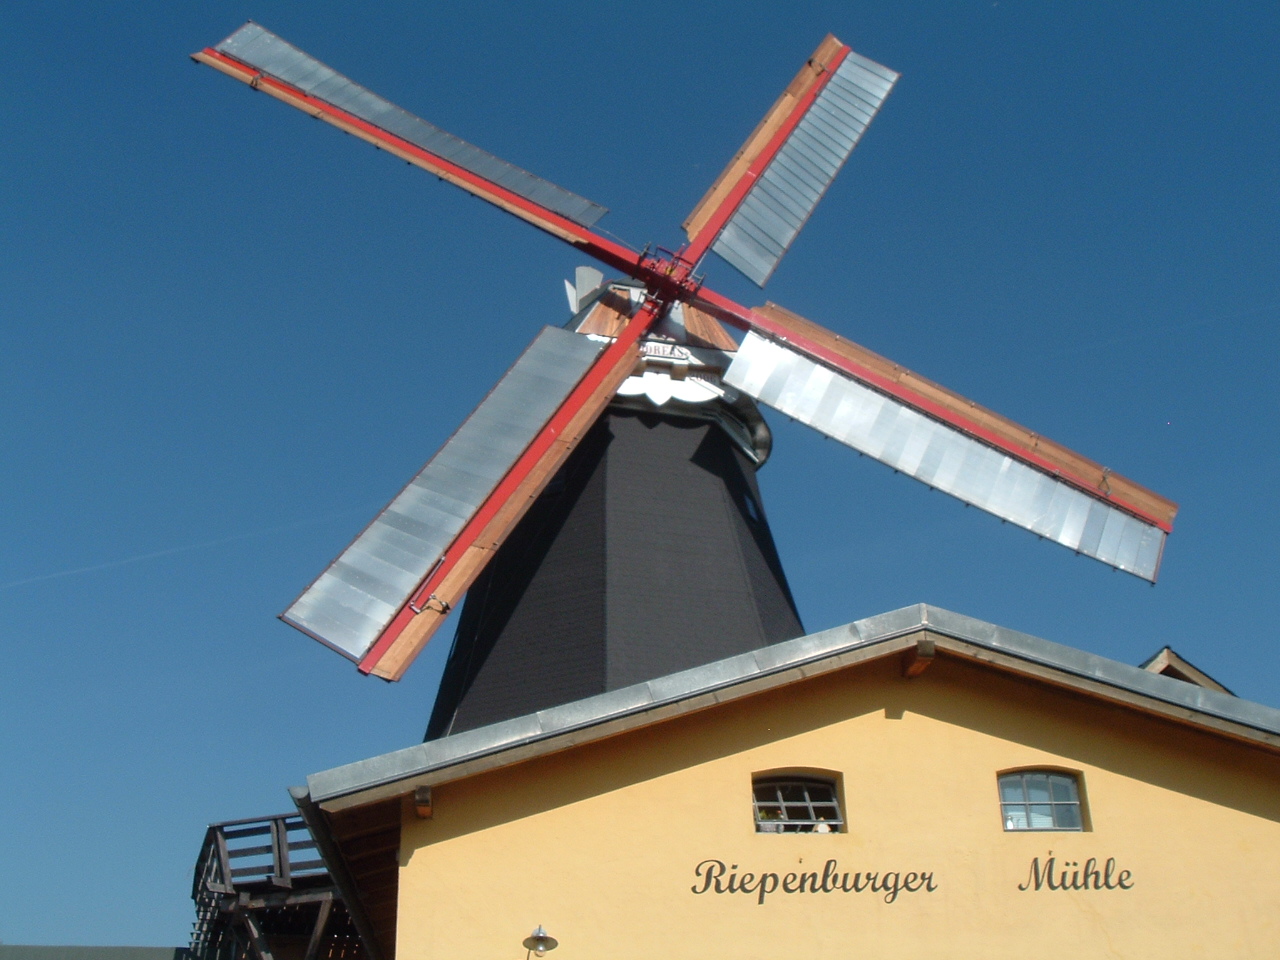 Bild Riepenburger Mühle